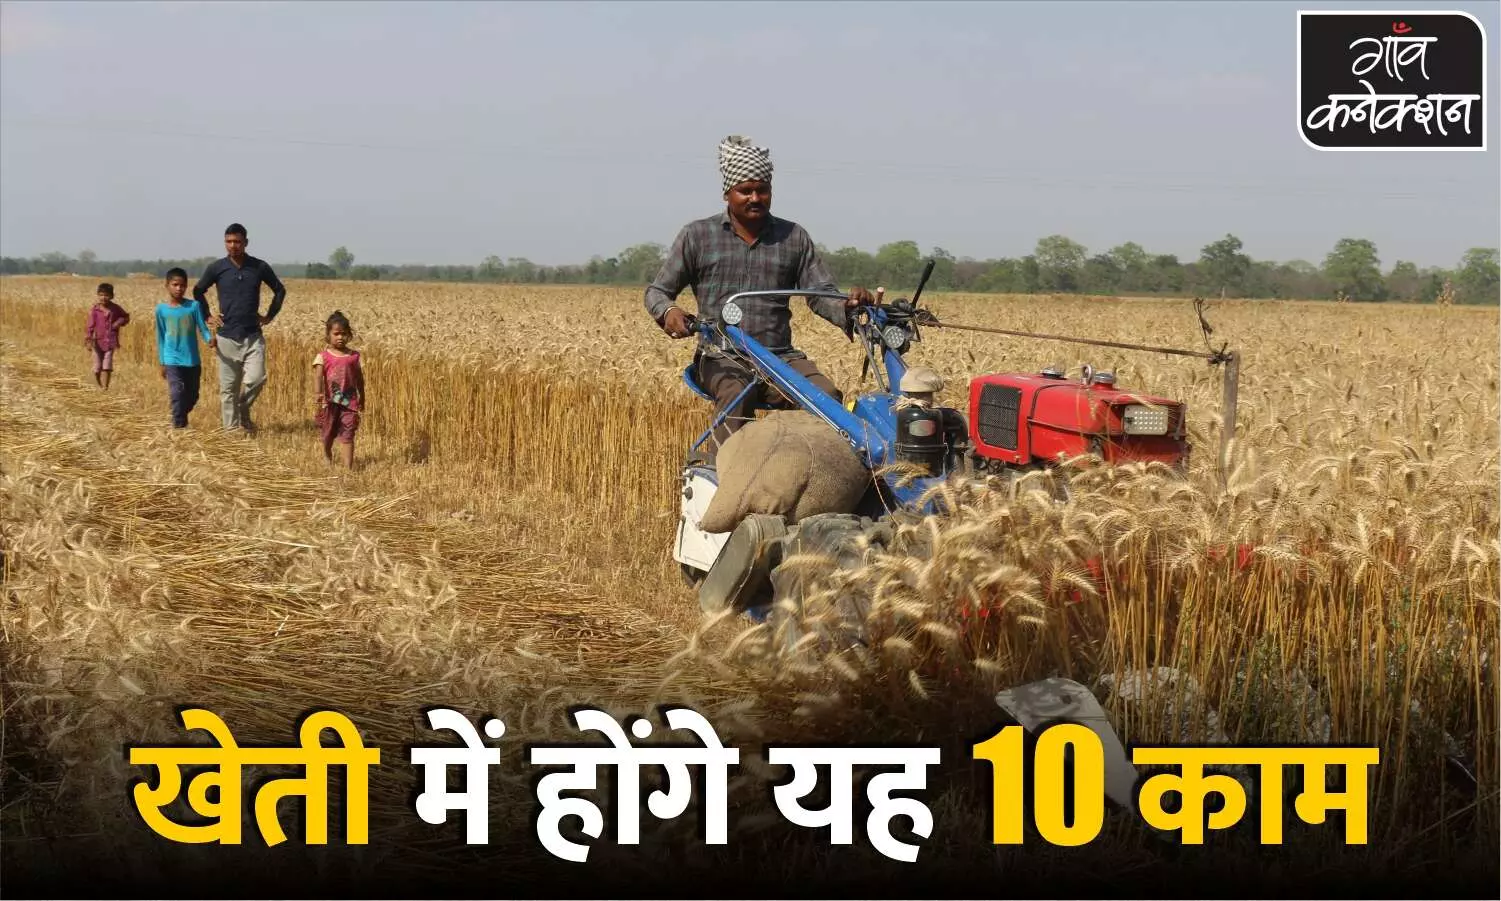 किसानों की आमदनी बढ़ाने के लिए सरकार का एजेंडा, अगले एक साल में एफपीओ समेत इन 10 कामों पर रहेगा फोकस